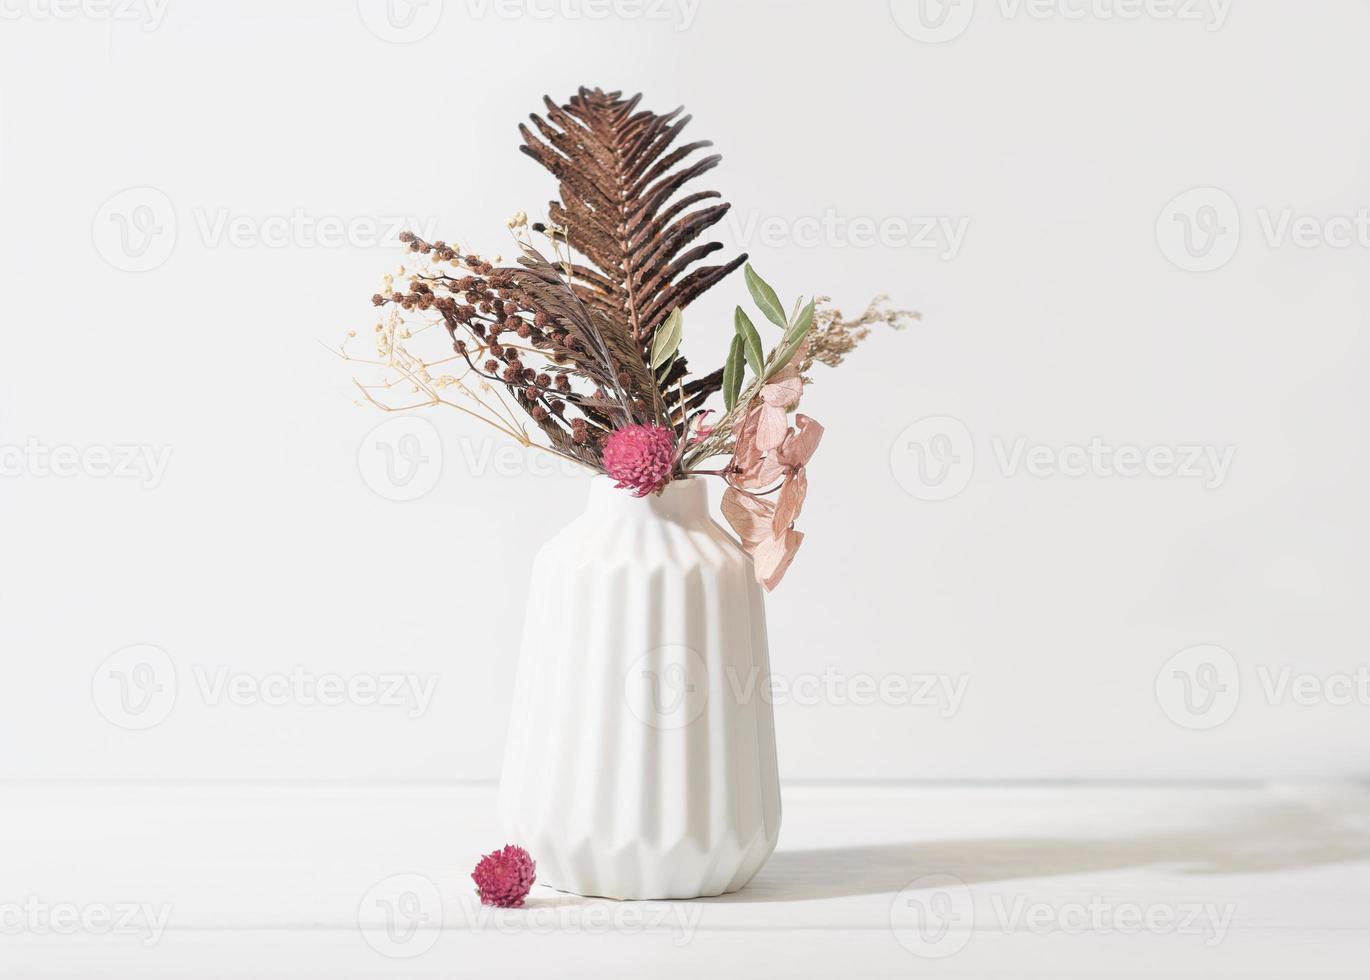 composición de ikebana estacional de otoño e invierno en jarrón blanco. flores secas y hojas como decoración del hogar. detalles de diseño de decoración de casa acogedora. foto